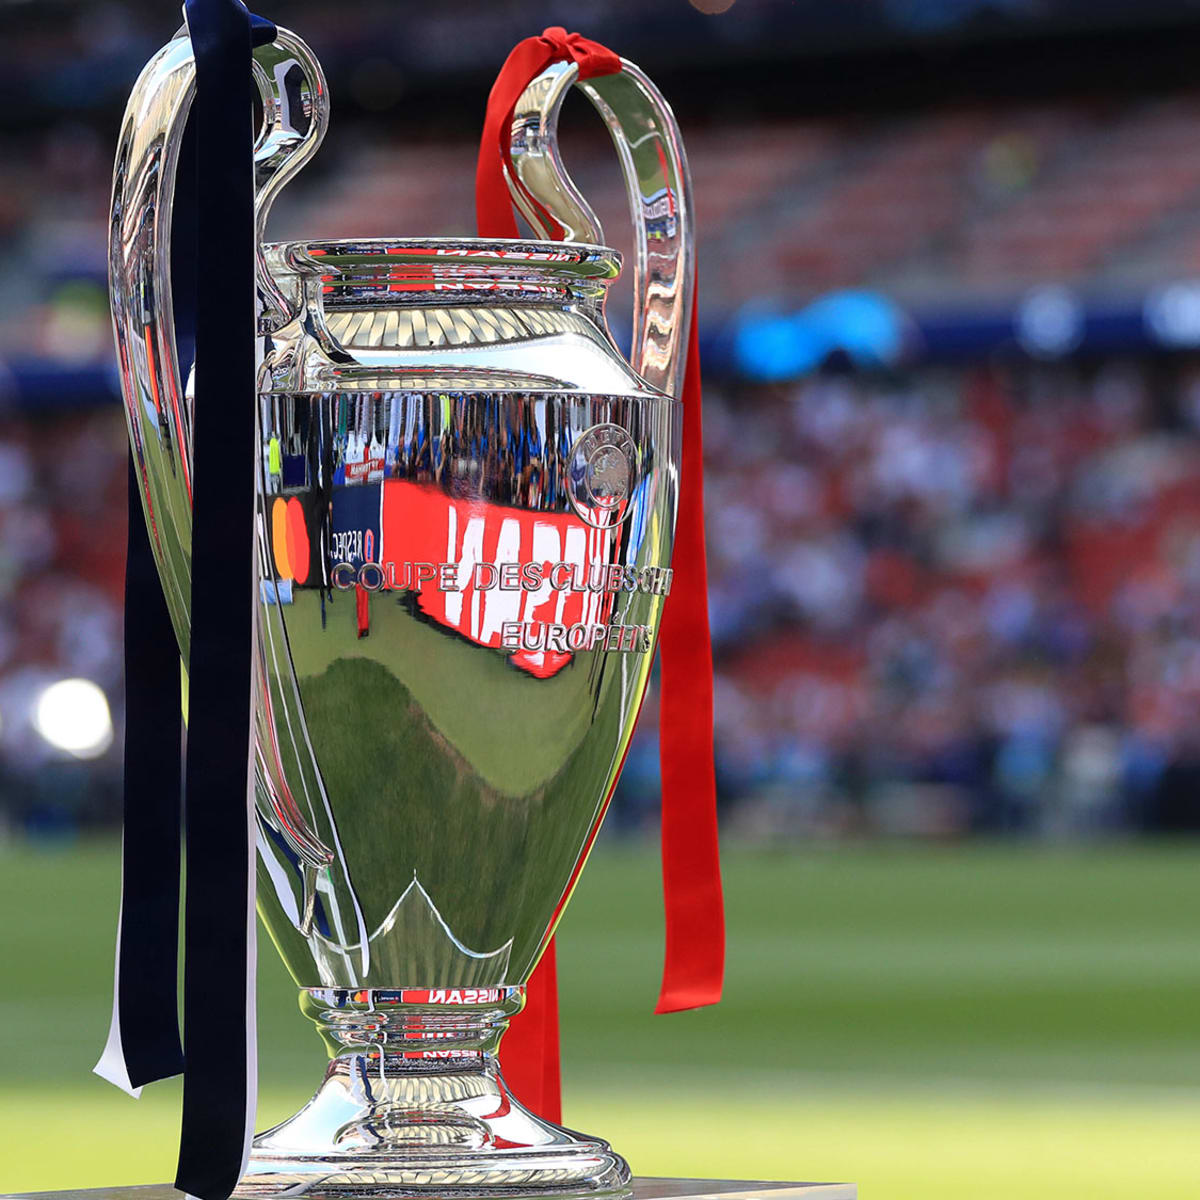 uefa champions league final 2022 trophy